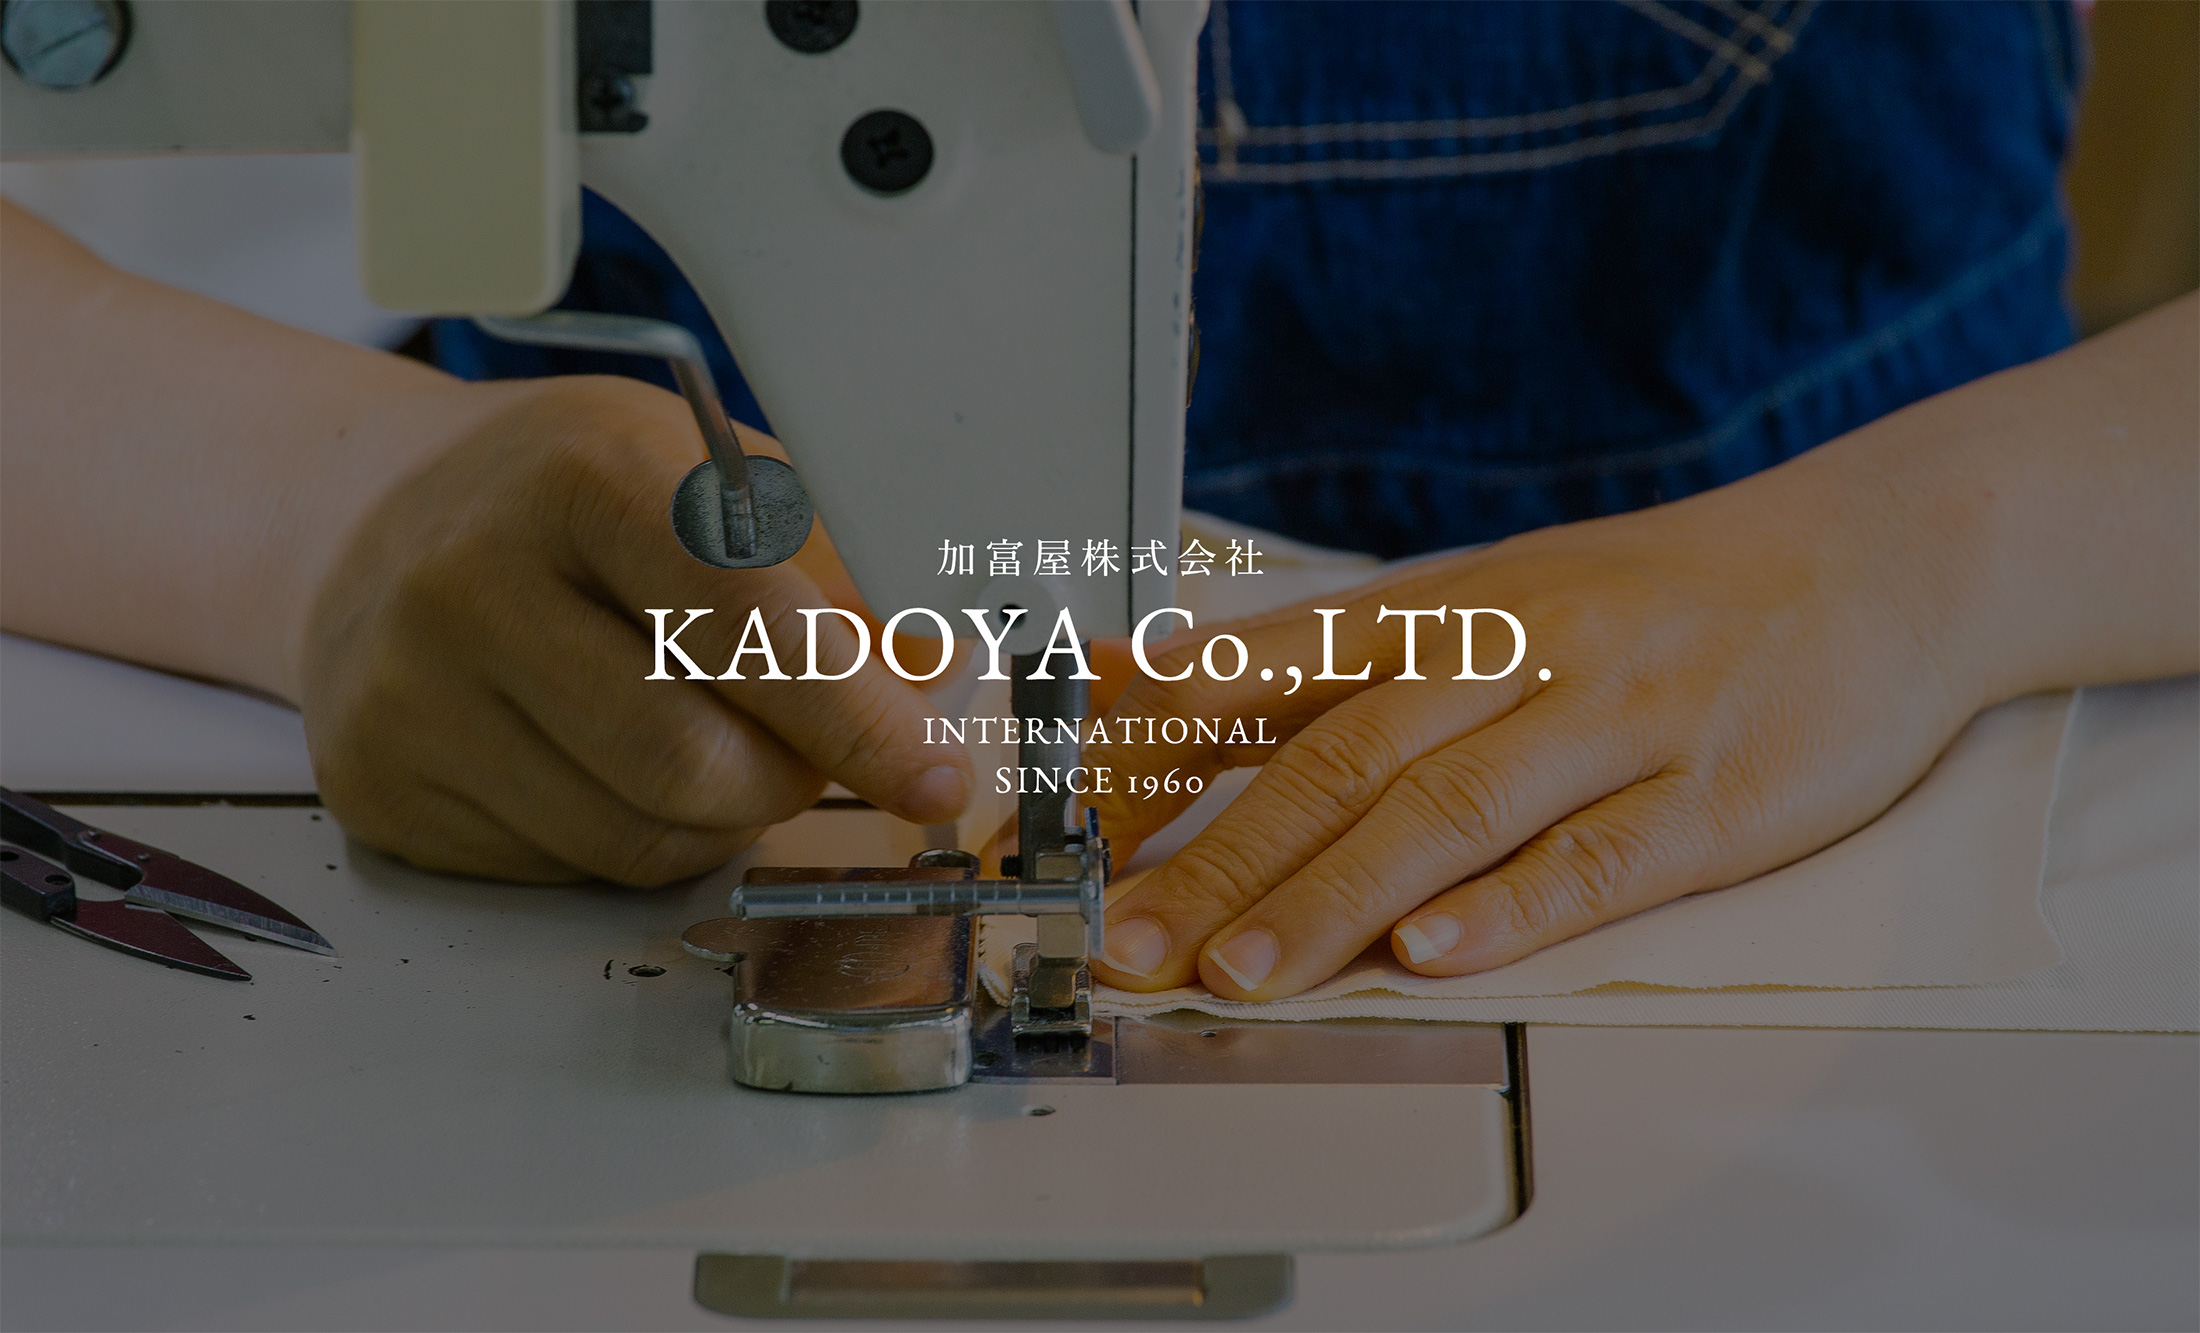 加富屋株式会社 KADOYA Co.,LTD. INTERNATIONAL SINCE 1960